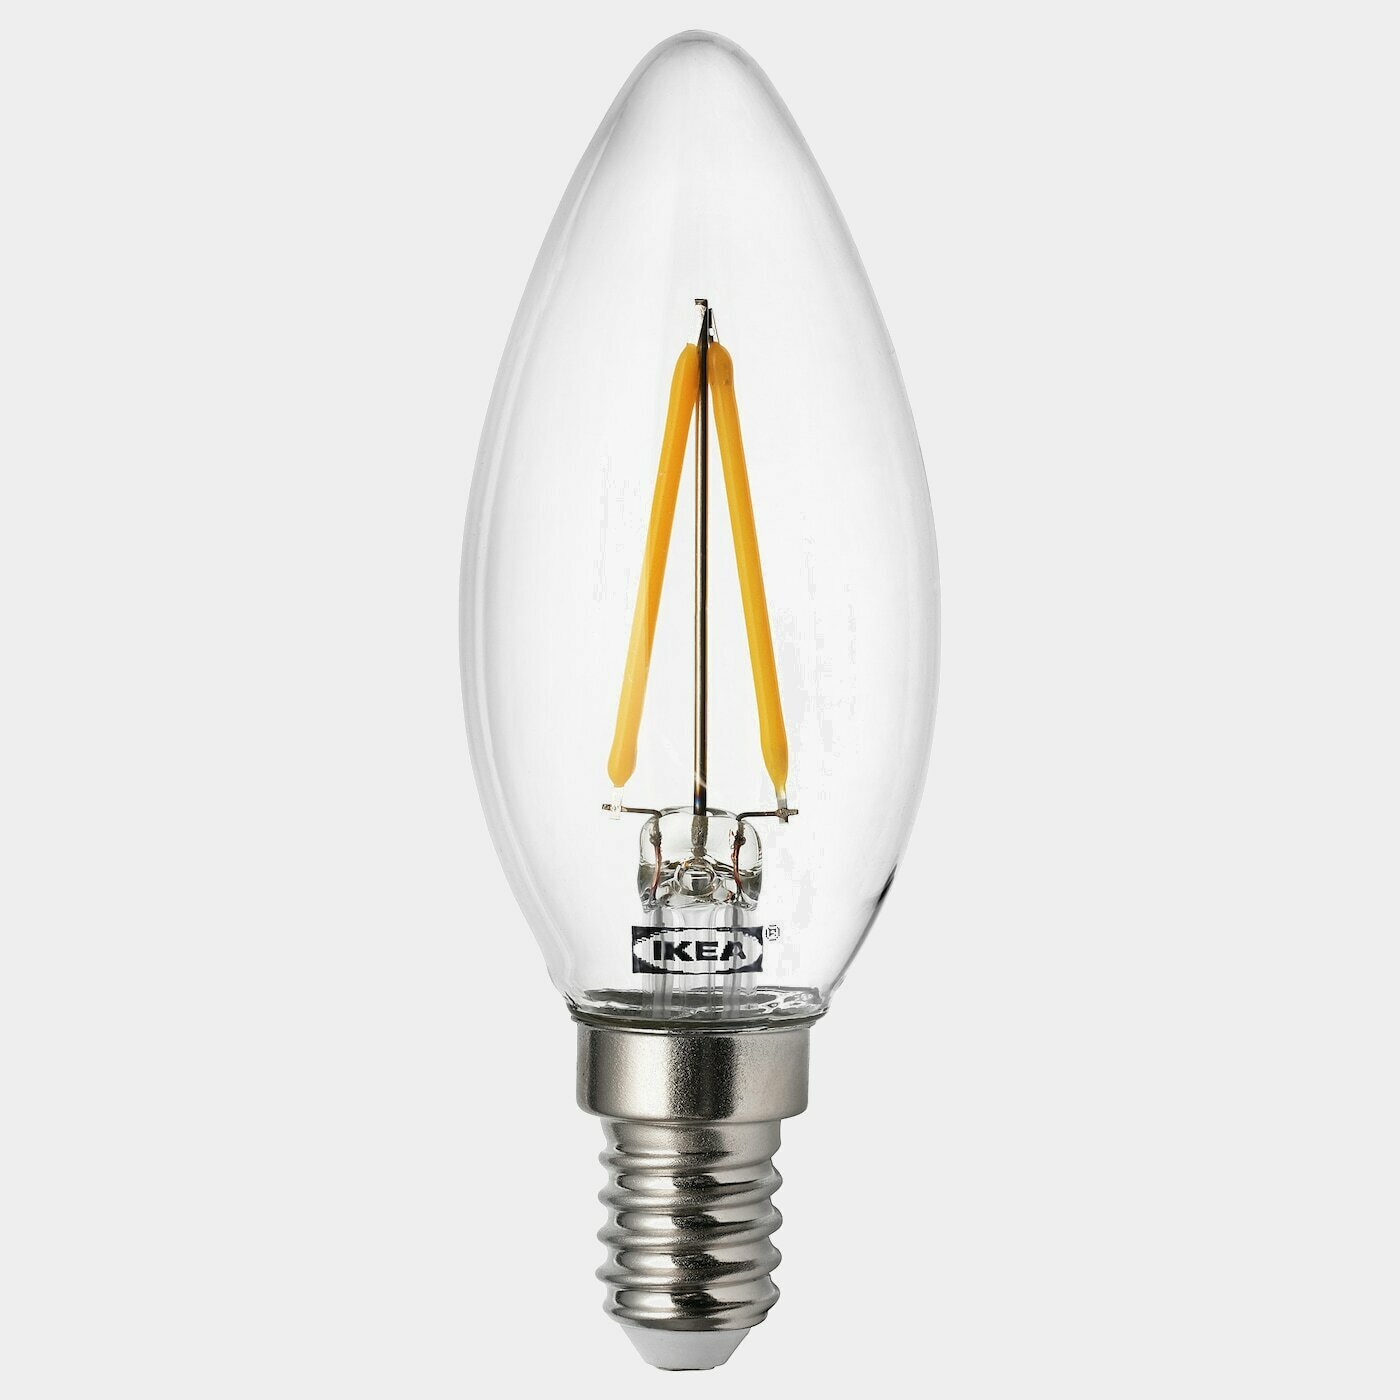 RYET LED-Leuchtmittel E14 200 lm  -  - Beleuchtung Ideen für dein Zuhause von Home Trends. Beleuchtung Trends von Social Media Influencer für dein Skandi Zuhause.